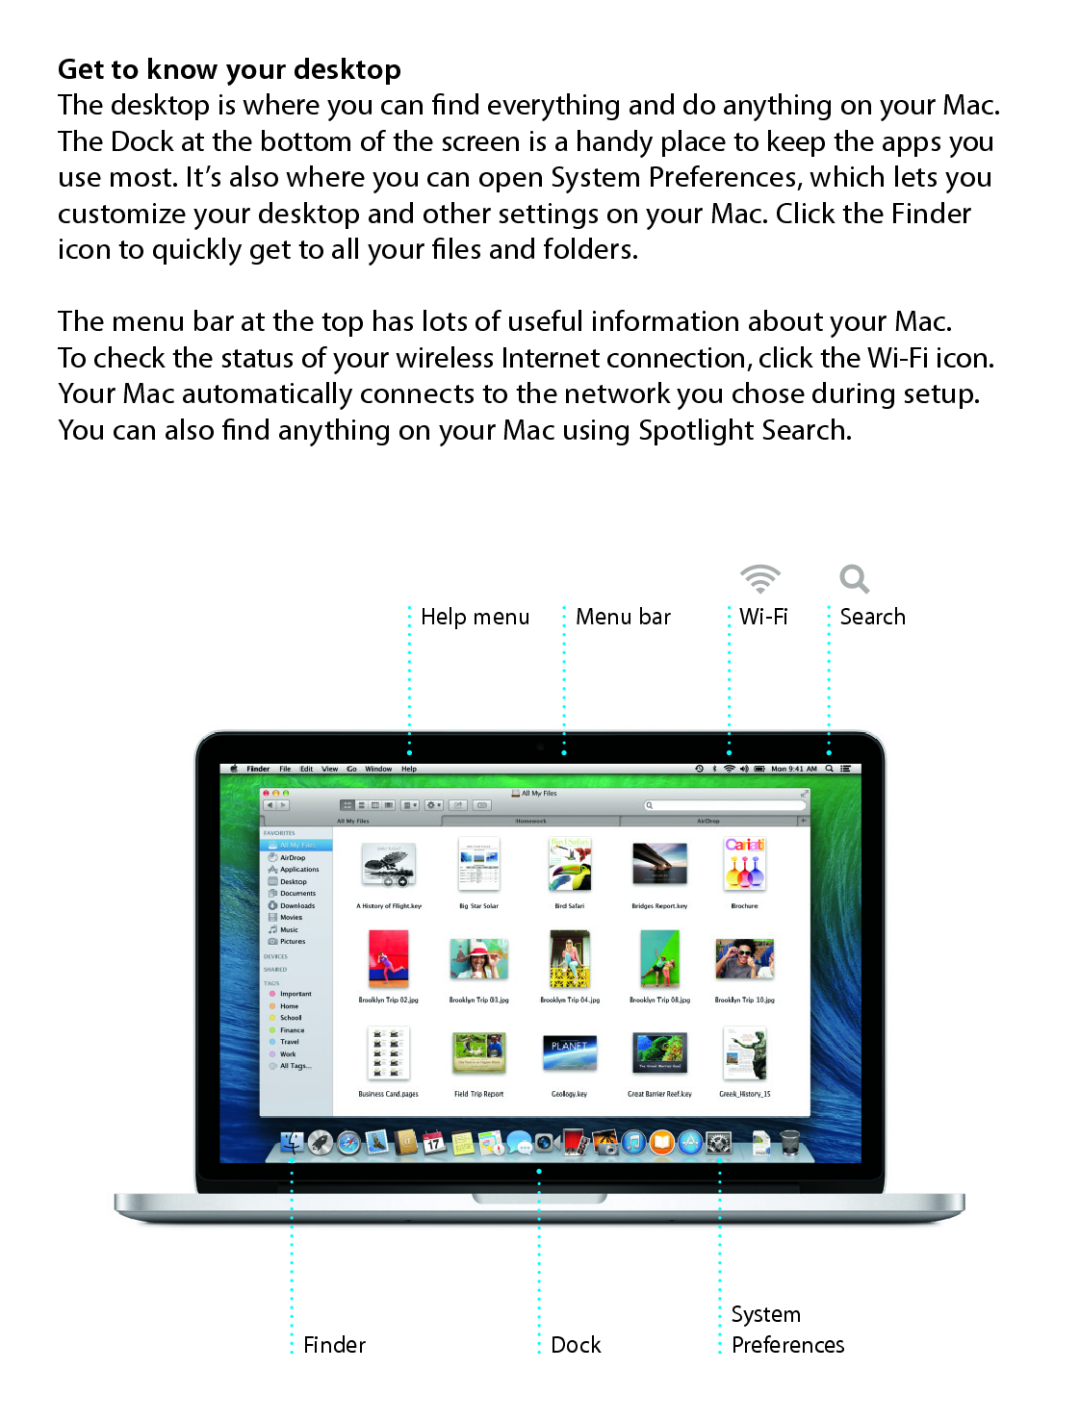 Apple ME294LL/A, ME665LL/A, ME864LL/A, MD102LL/A Get to know your desktop, Help menu, Menu bar, Wi-Fi, System, Finder, Dock 